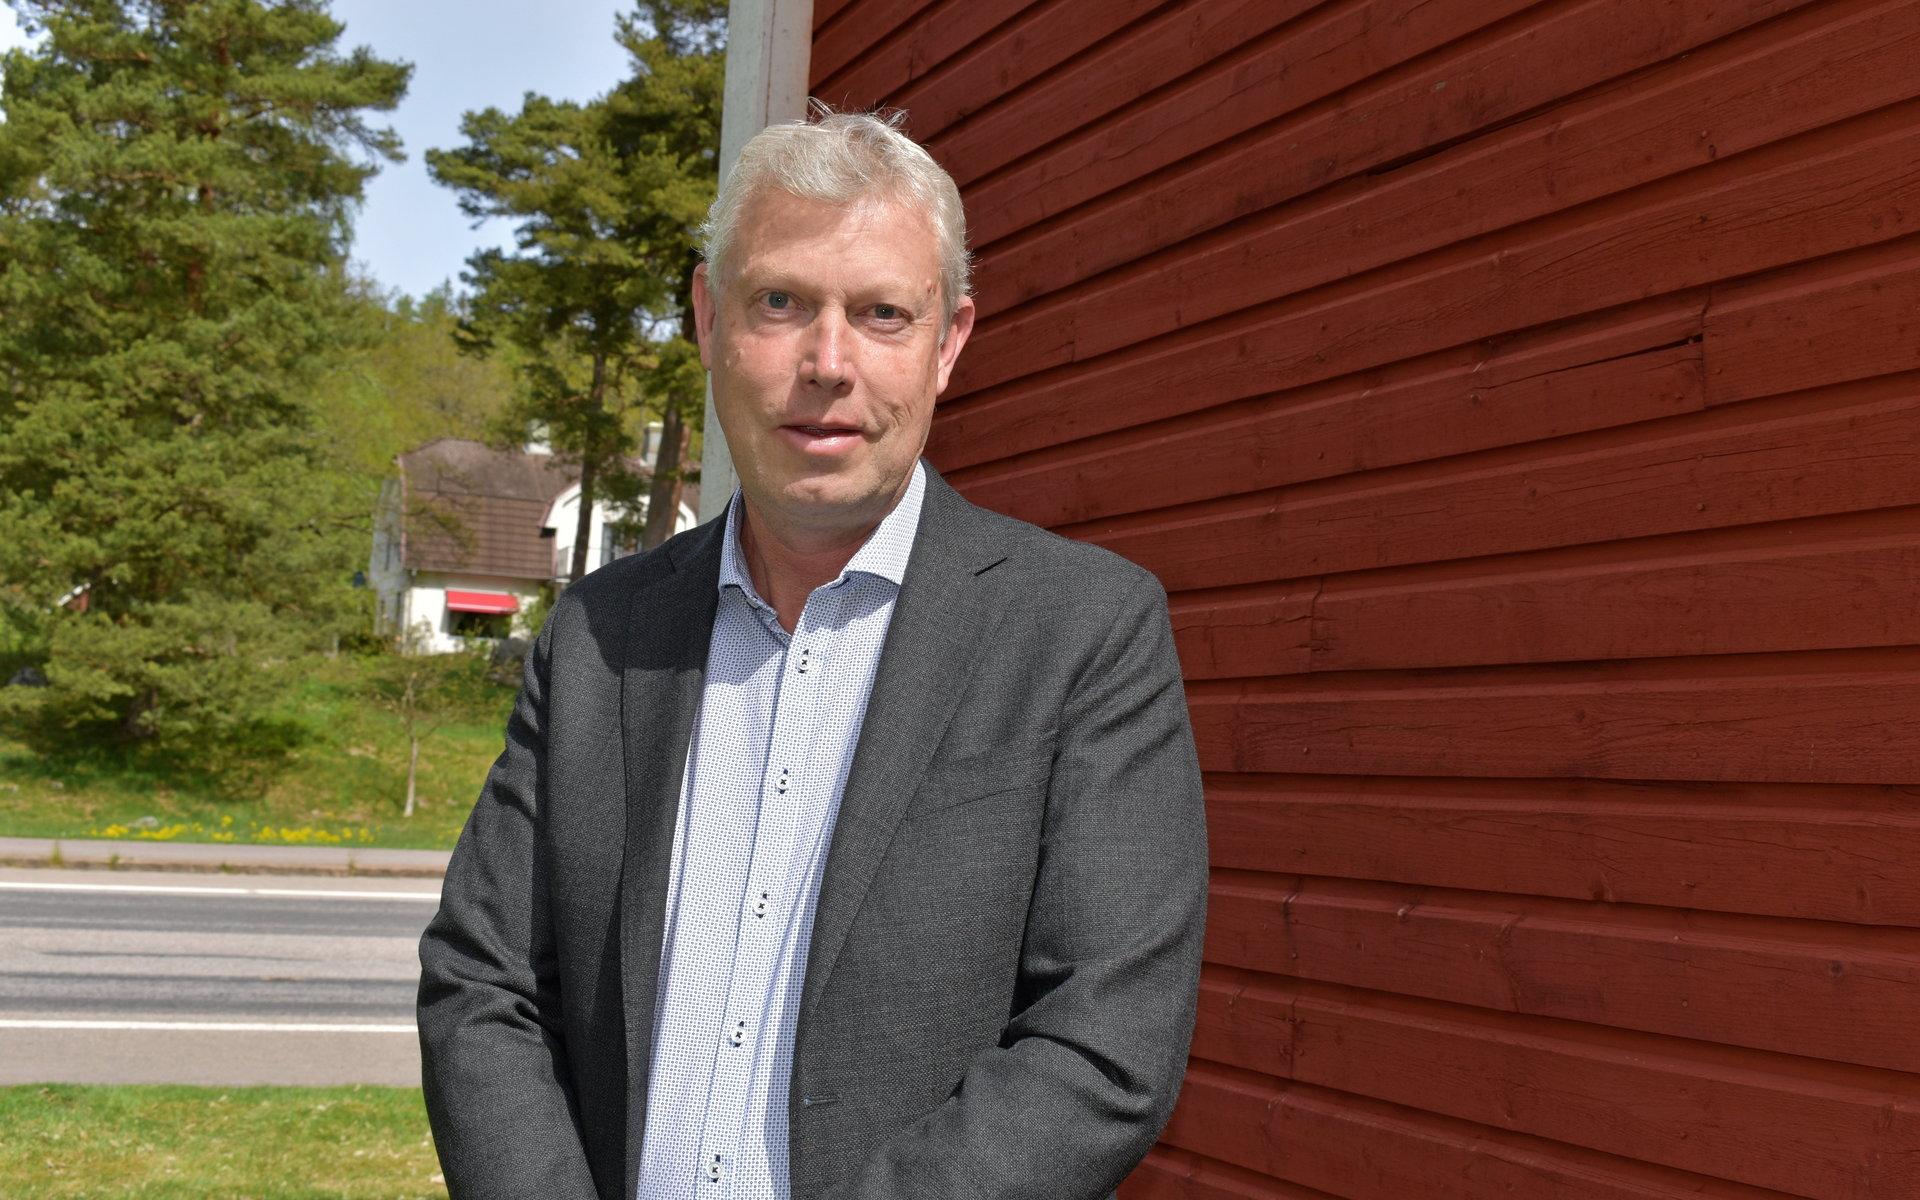 Ola Andersson är en 53-årig laholmare med lång erfarenhet från olika befattningar inom bankvärlden. I april i år tillträdde han som ny vd för Södra Hestra sparbank med huvudkontor i Hyltebruk.